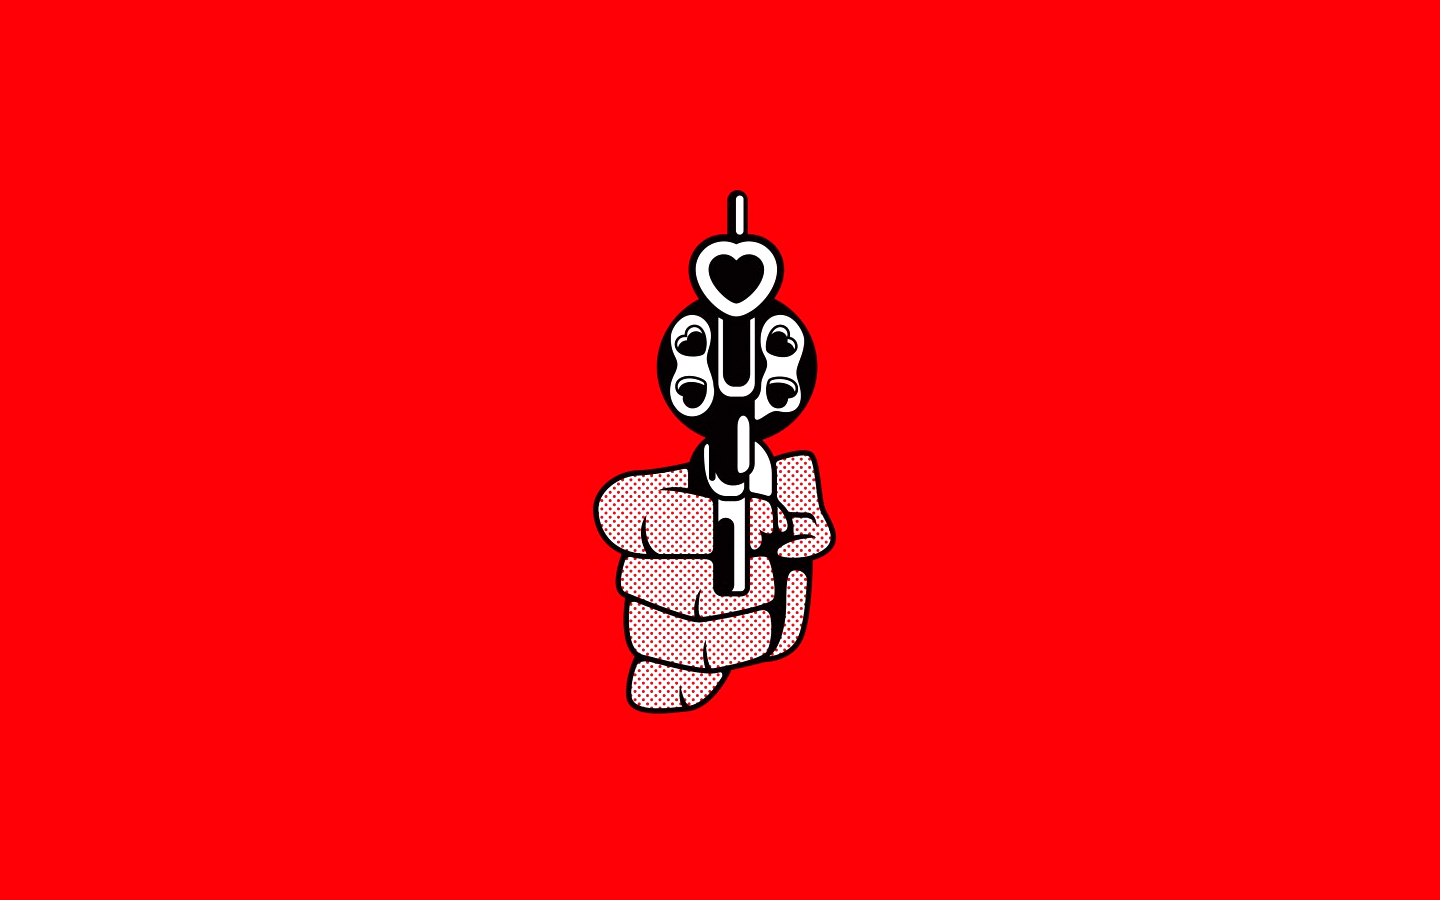 General 1440x900 gun love at gunpoint heart (design) simple background red background minimalism hands weapon artwork